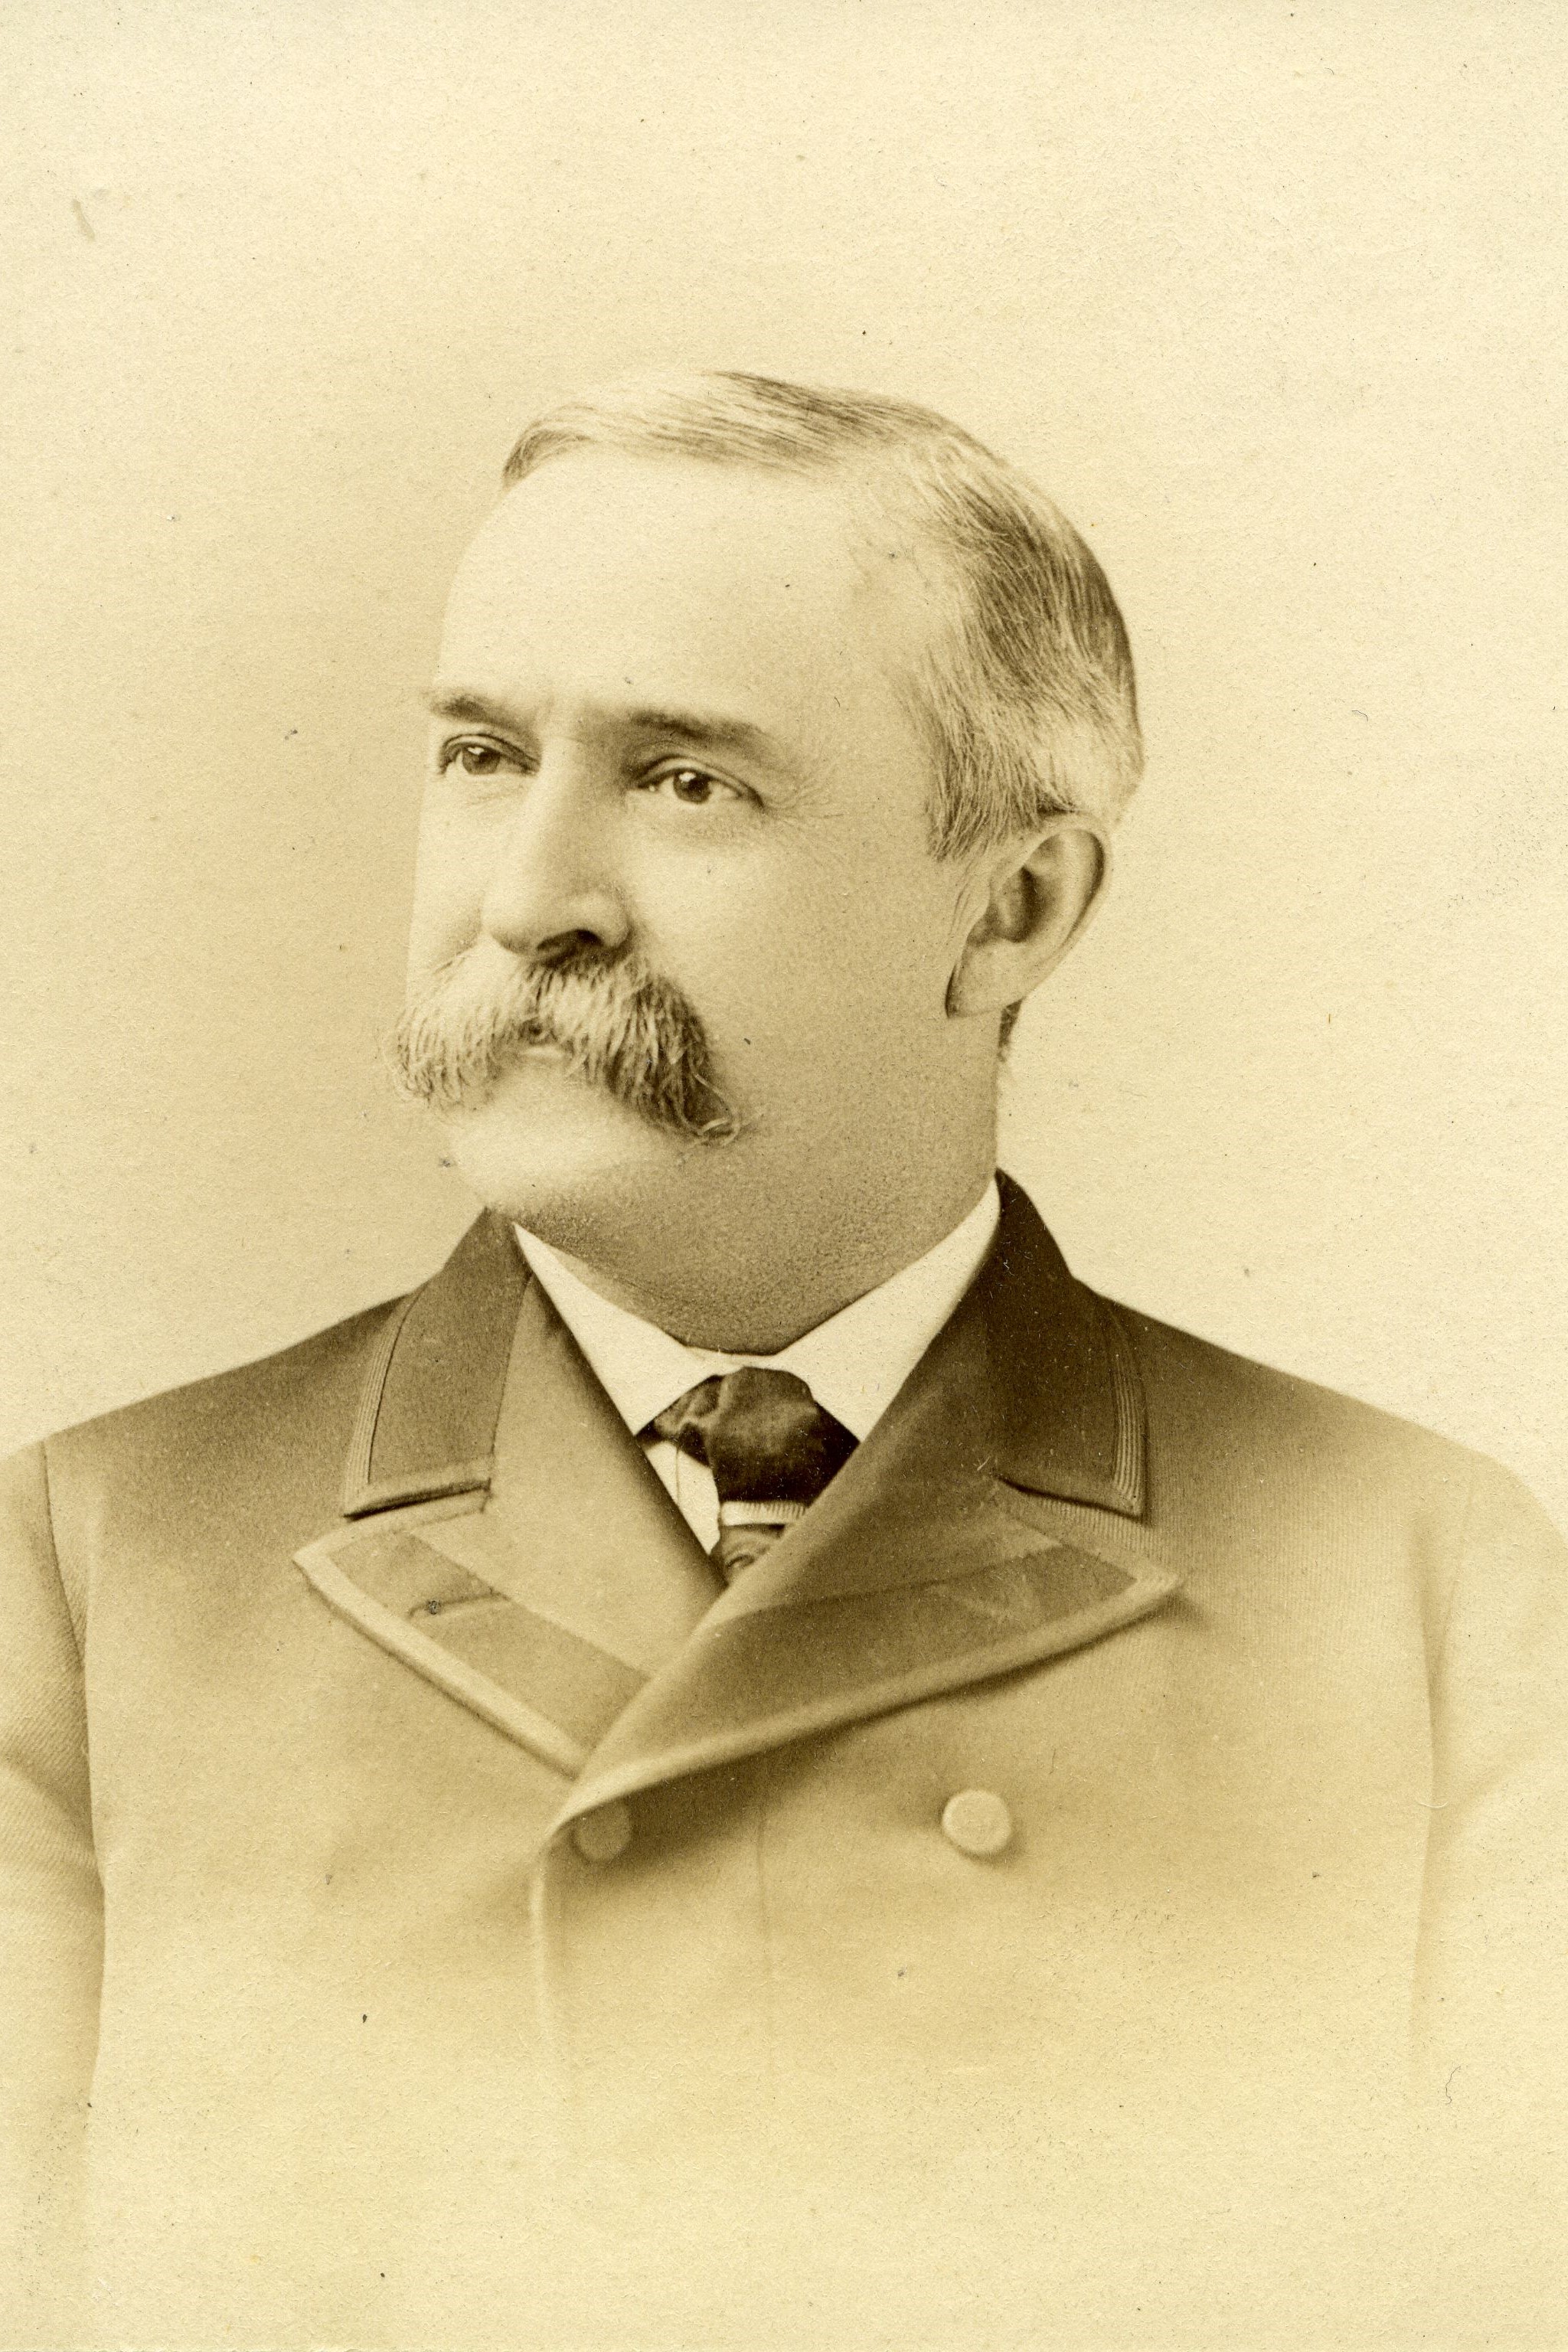 Member portrait of Herbert B. Turner